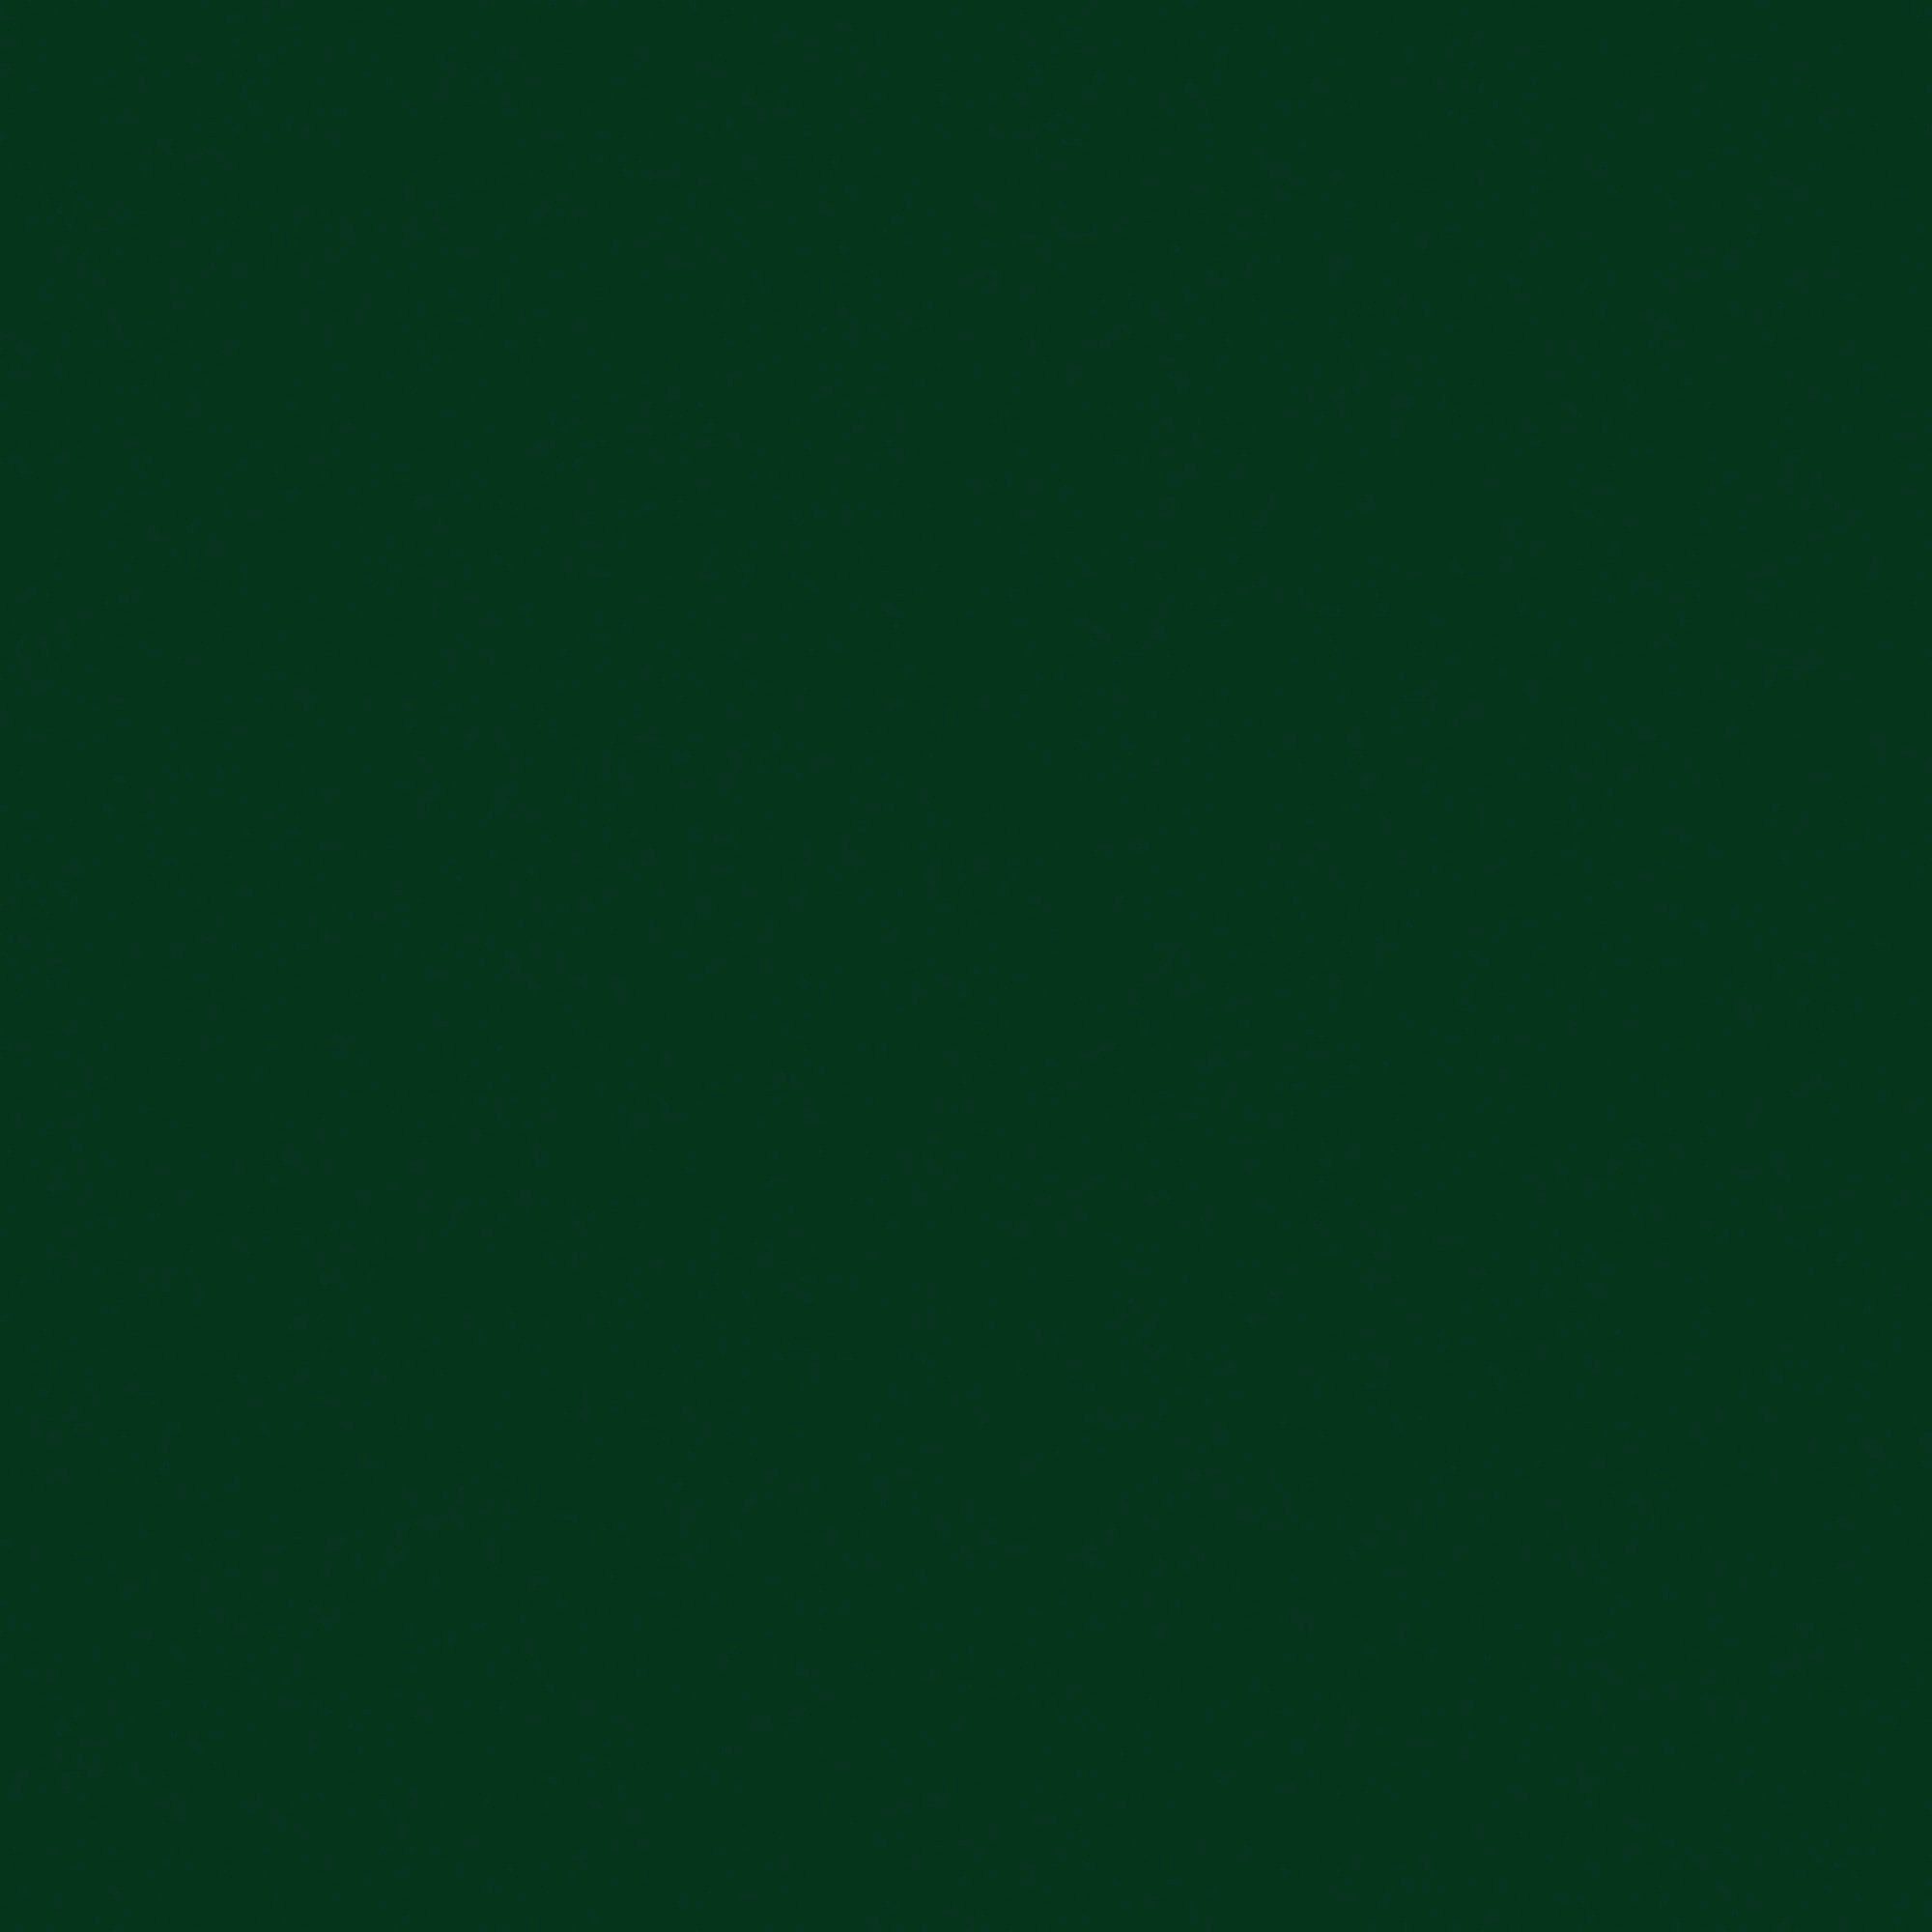 0,75 AUF Hammerite  ROST, glänzend Liter, grün DIREKT Metallschutzlack